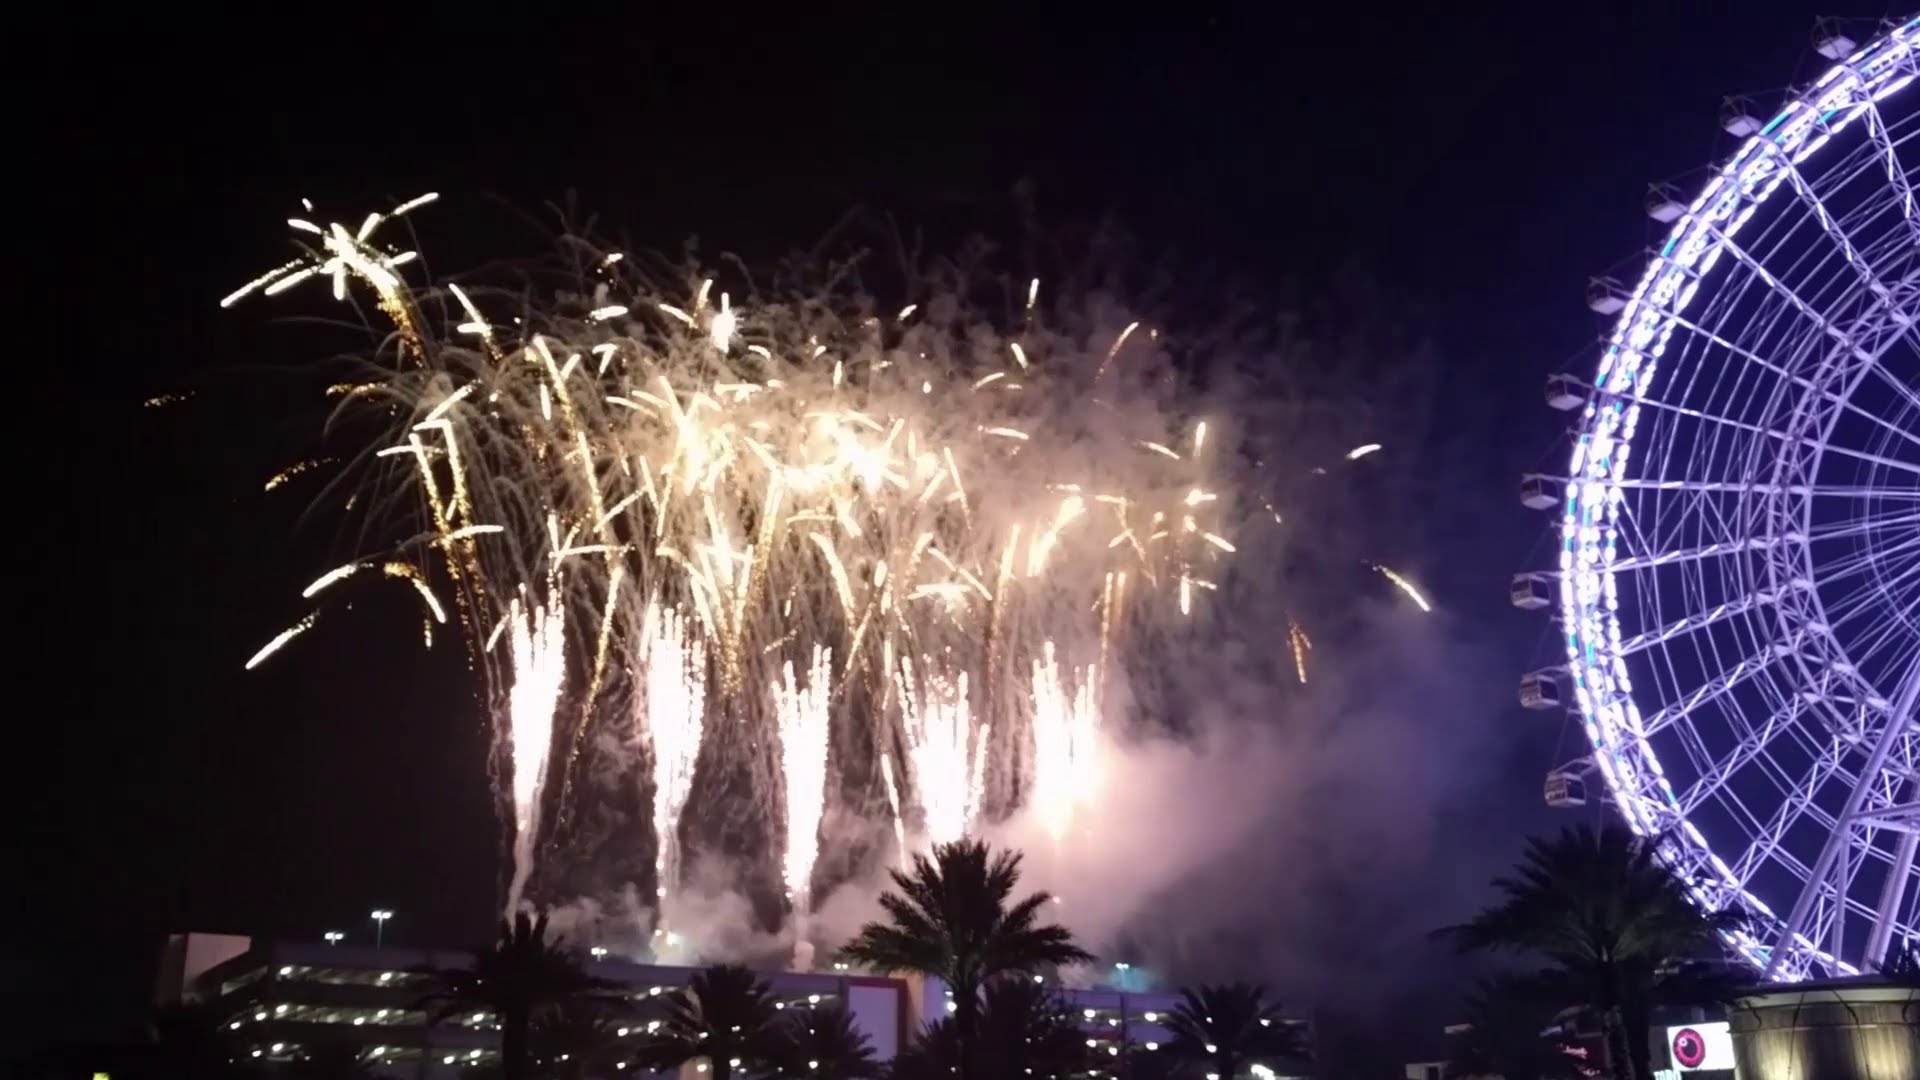 Orlando Eye fireworks to celebrate New Year's Eve 2015-2016 - YouTube